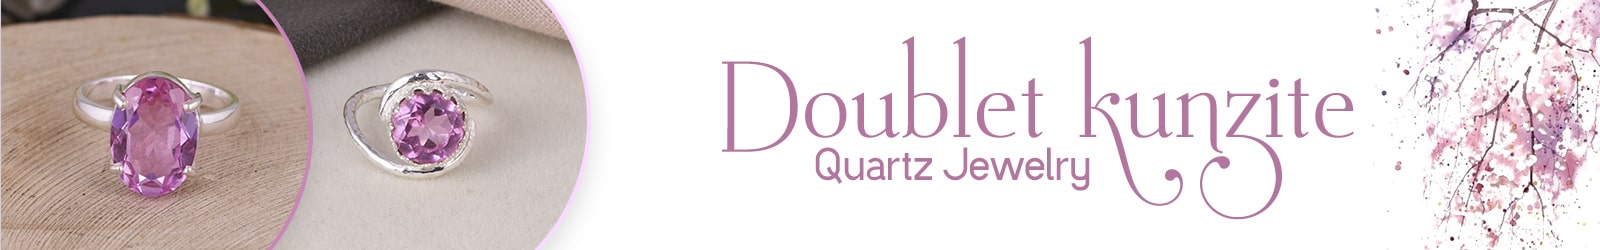 Silver Doublet Kunzite Quartz Jewelry Wholesale Supplier